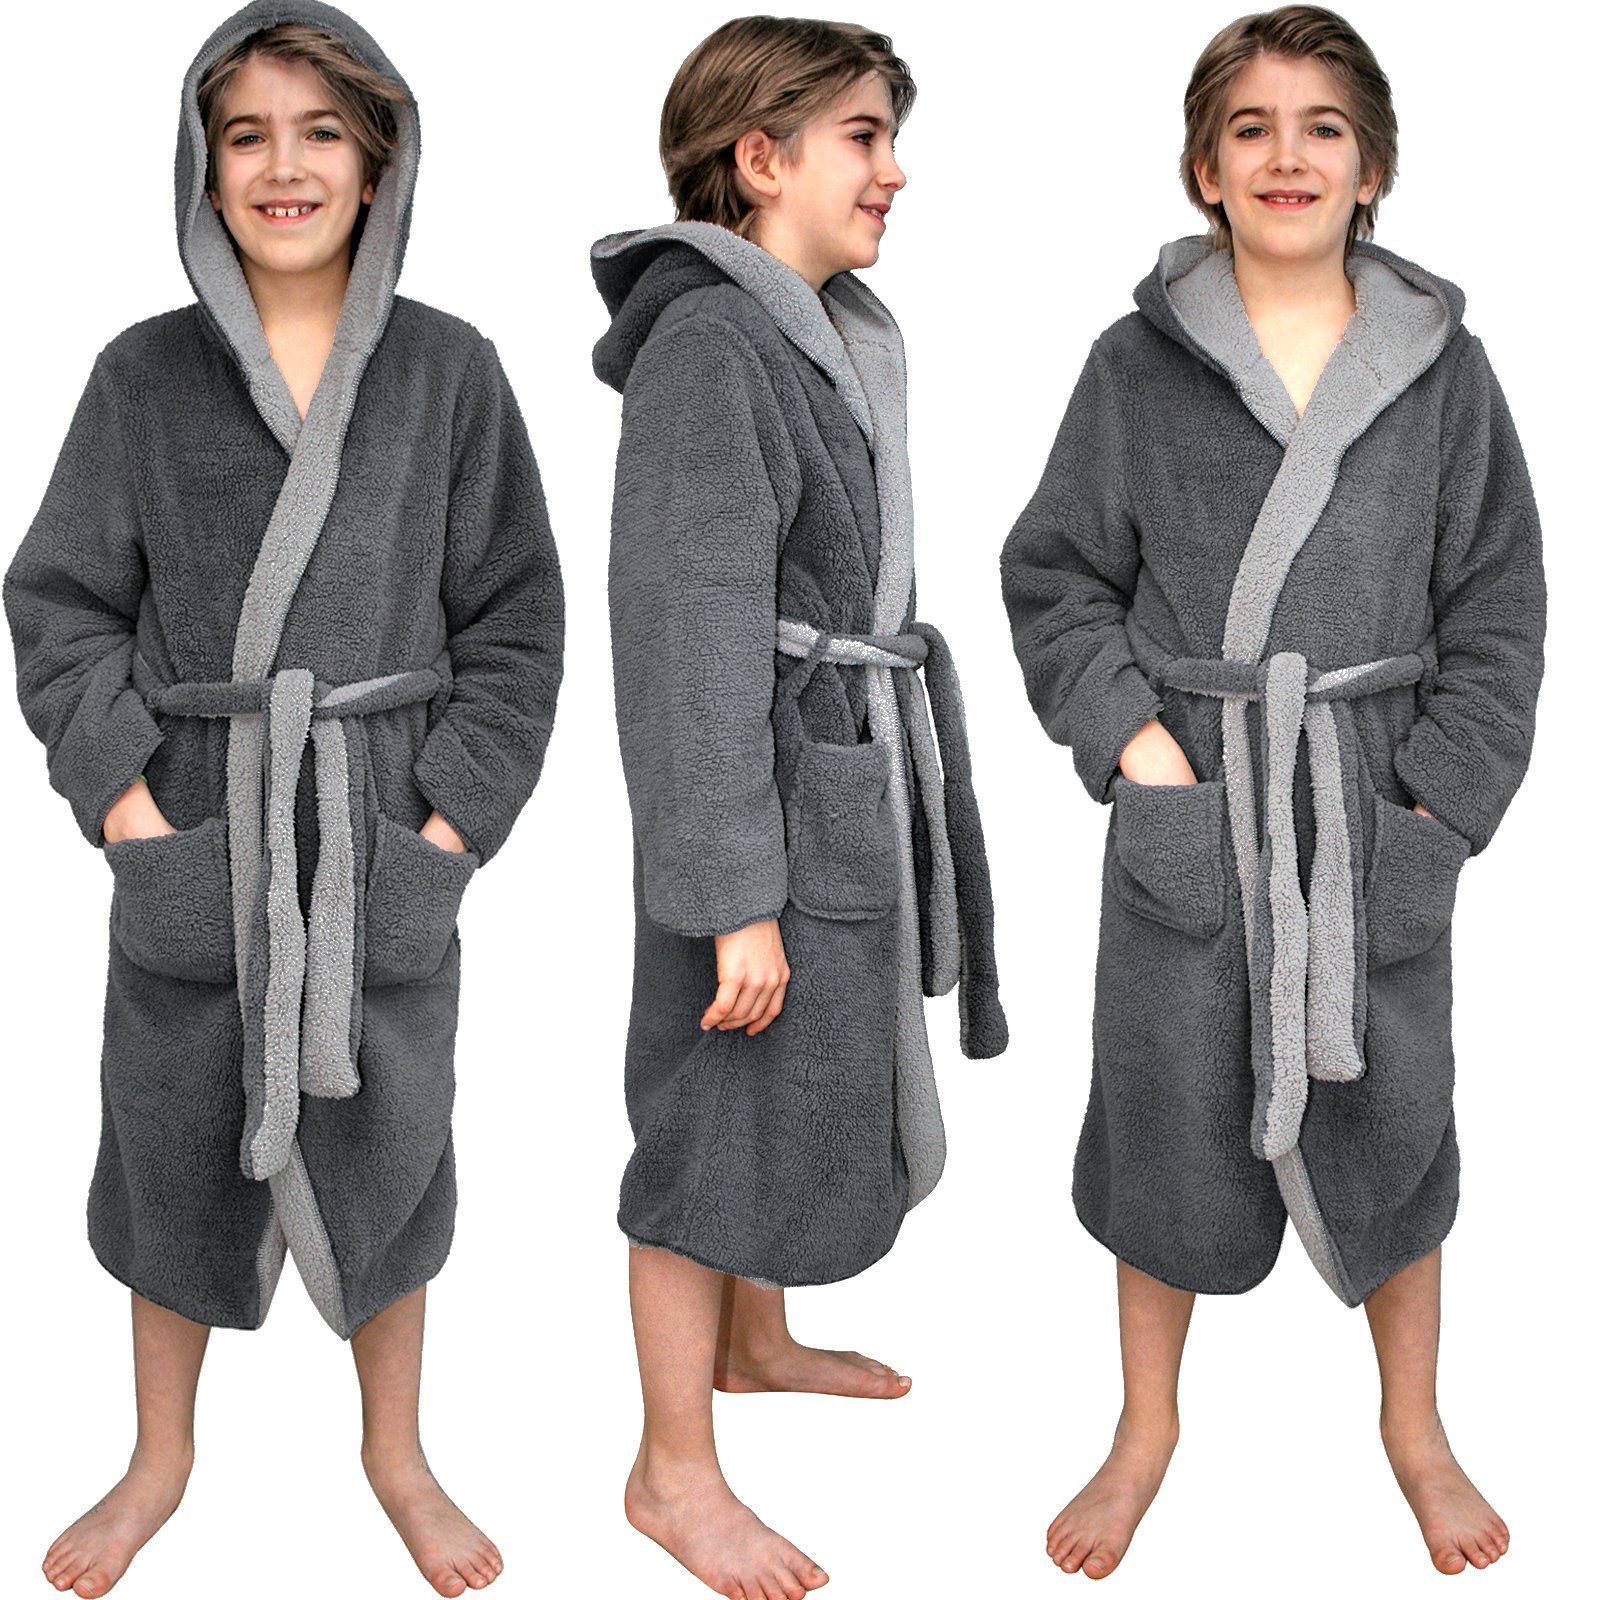 Sherpa - Wende-Design, HOMELEVEL Polyester Bademantel Kinder - Kuschelfleece Kinderbademantel für